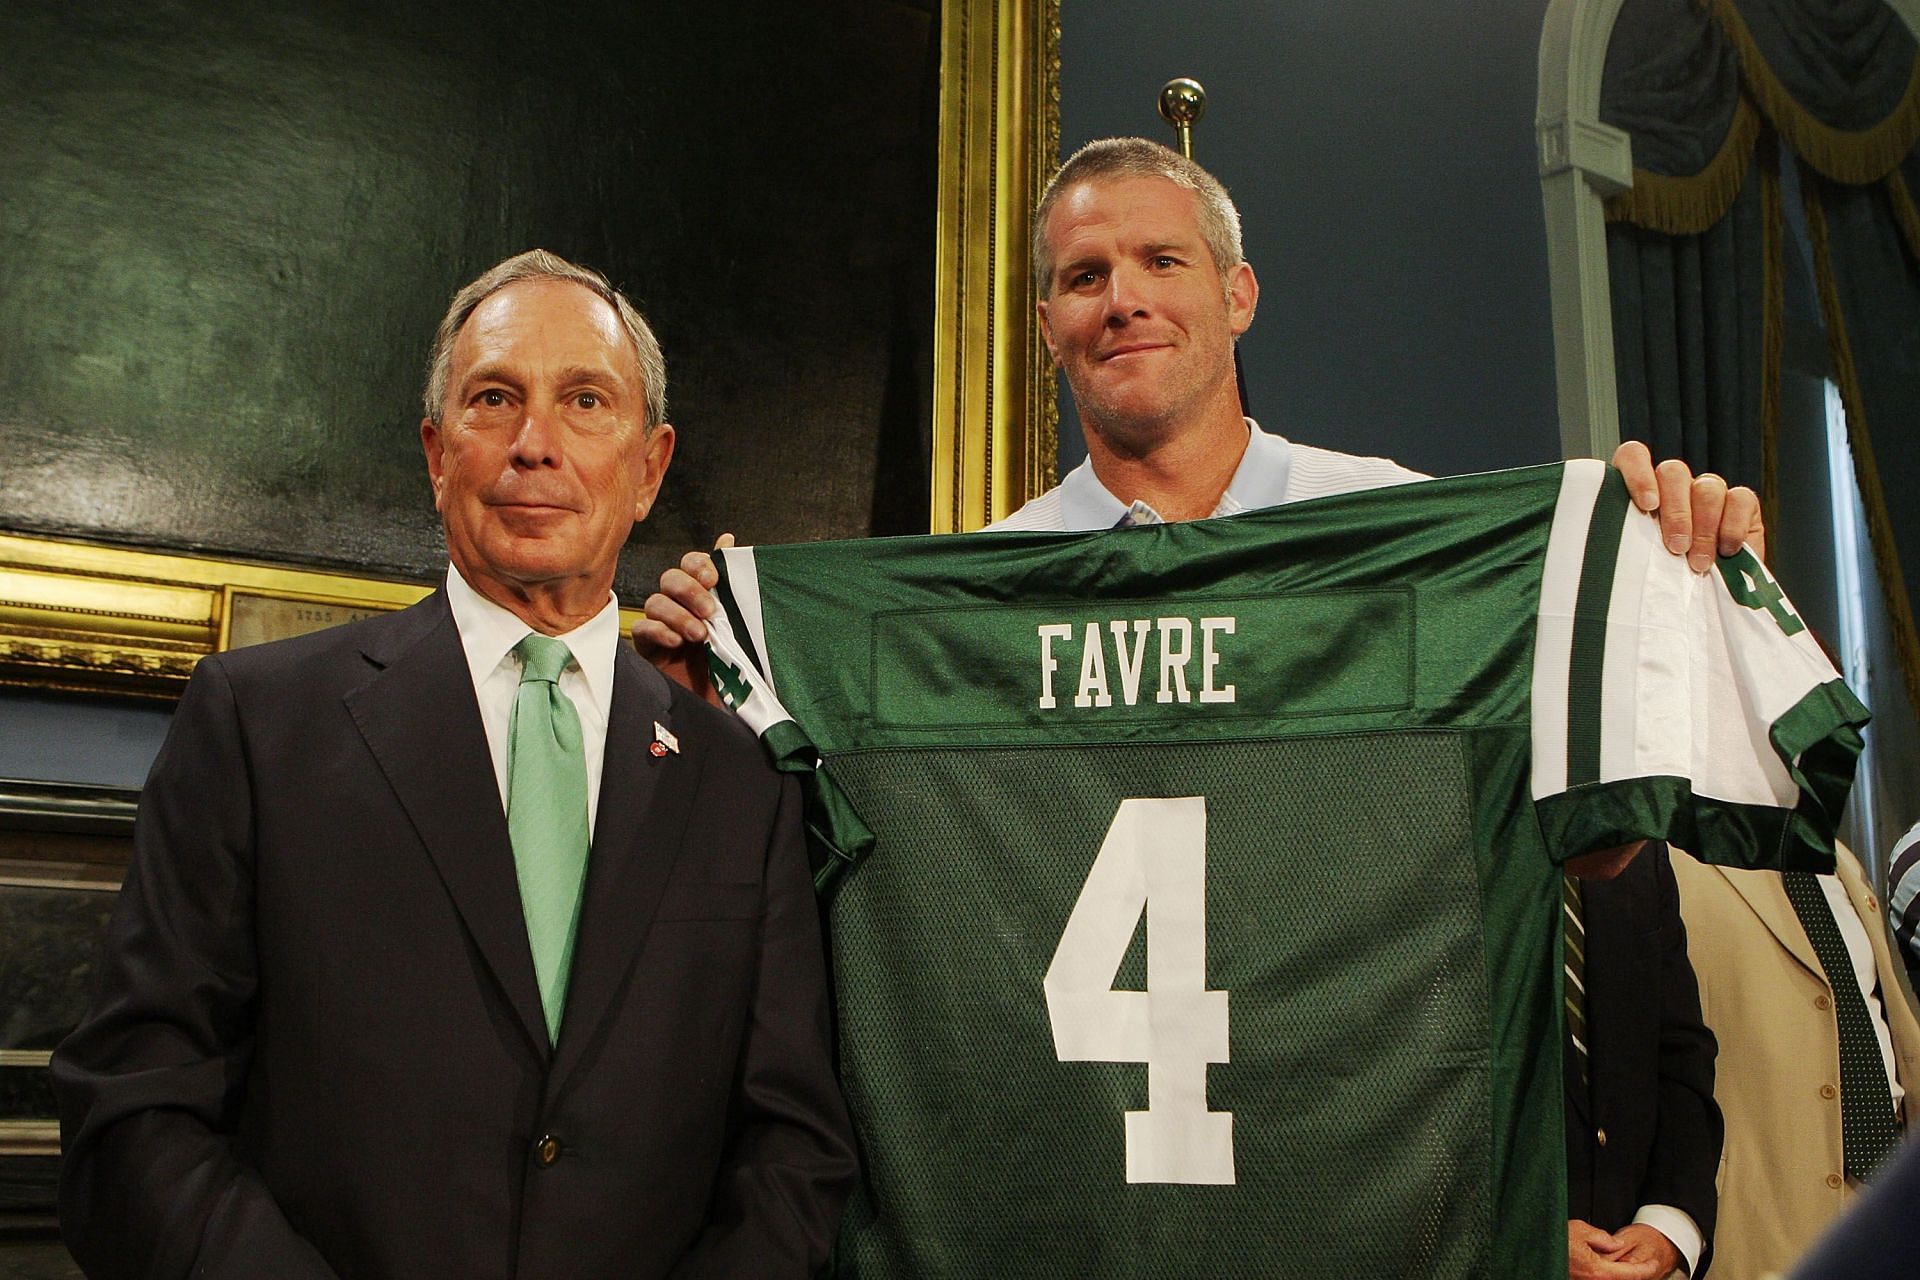 Mayor Bloomberg Welcomes Brett Favre to New York